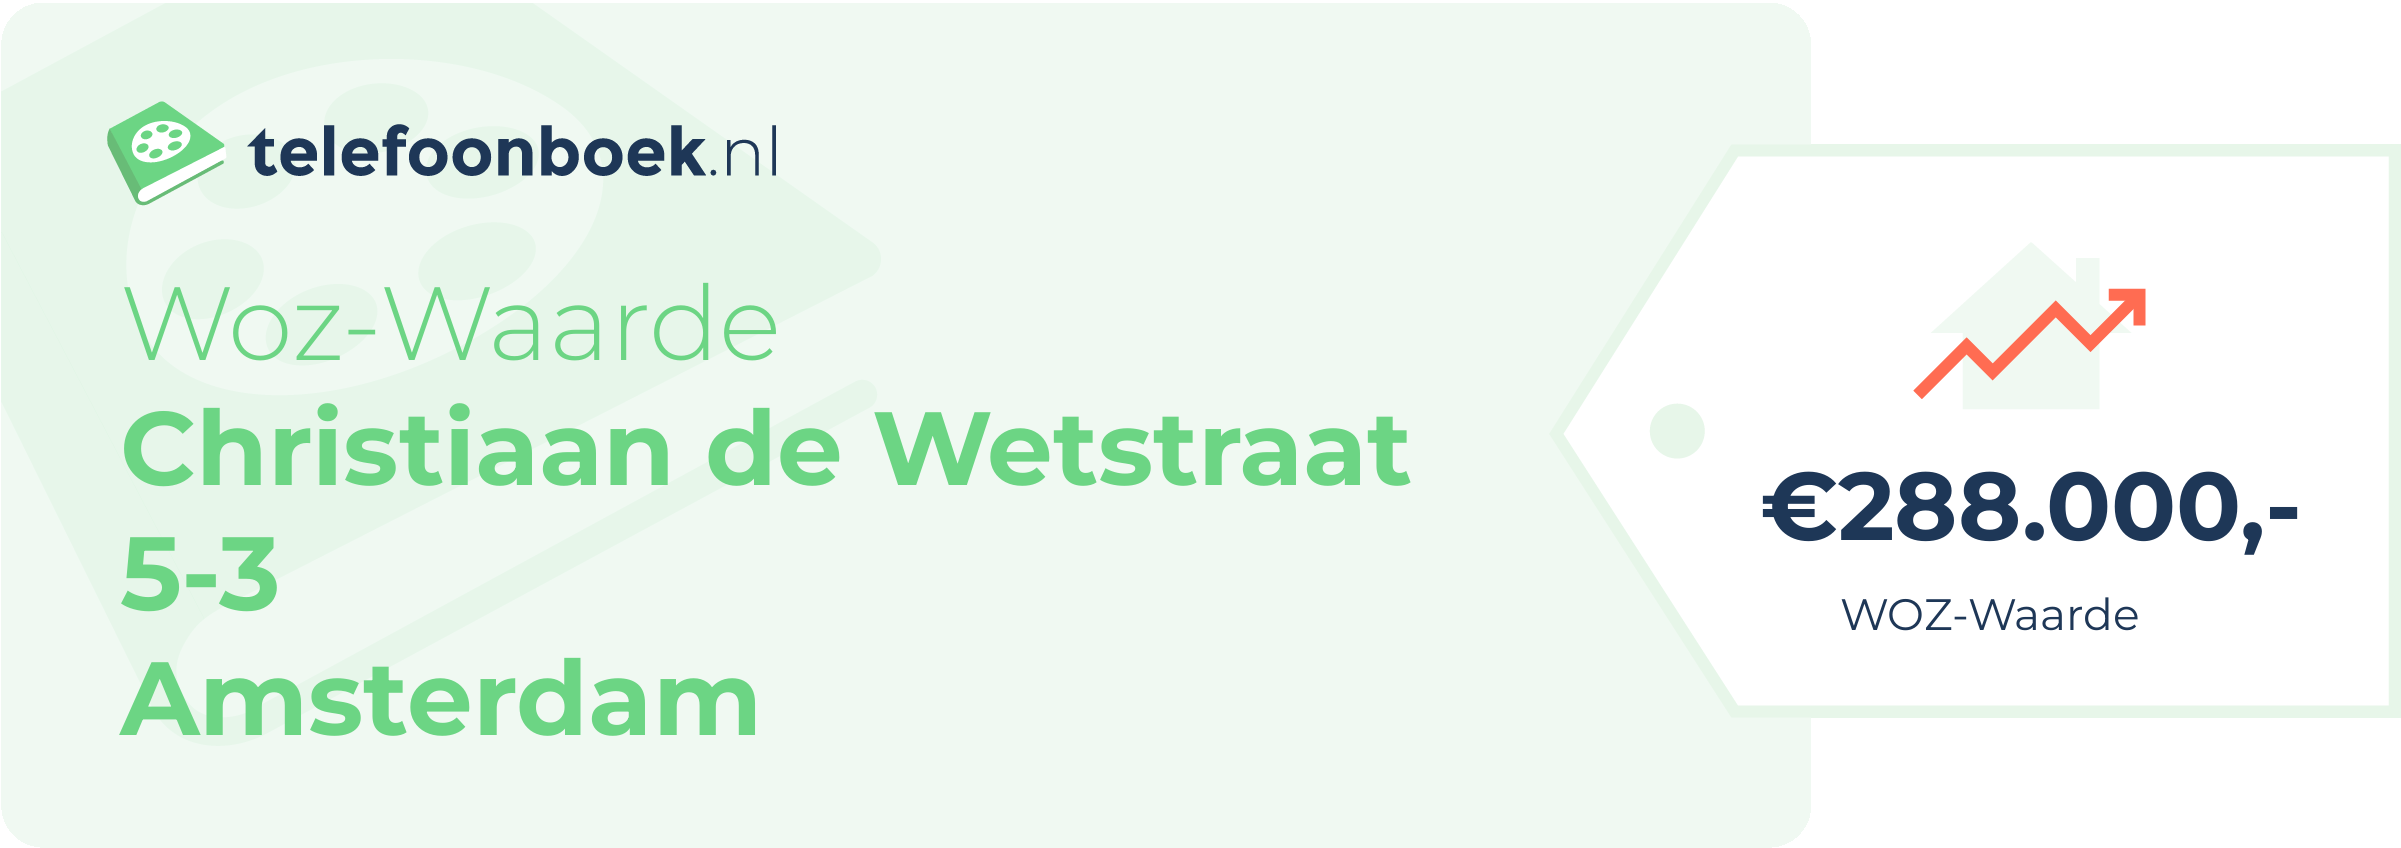 WOZ-waarde Christiaan De Wetstraat 5-3 Amsterdam